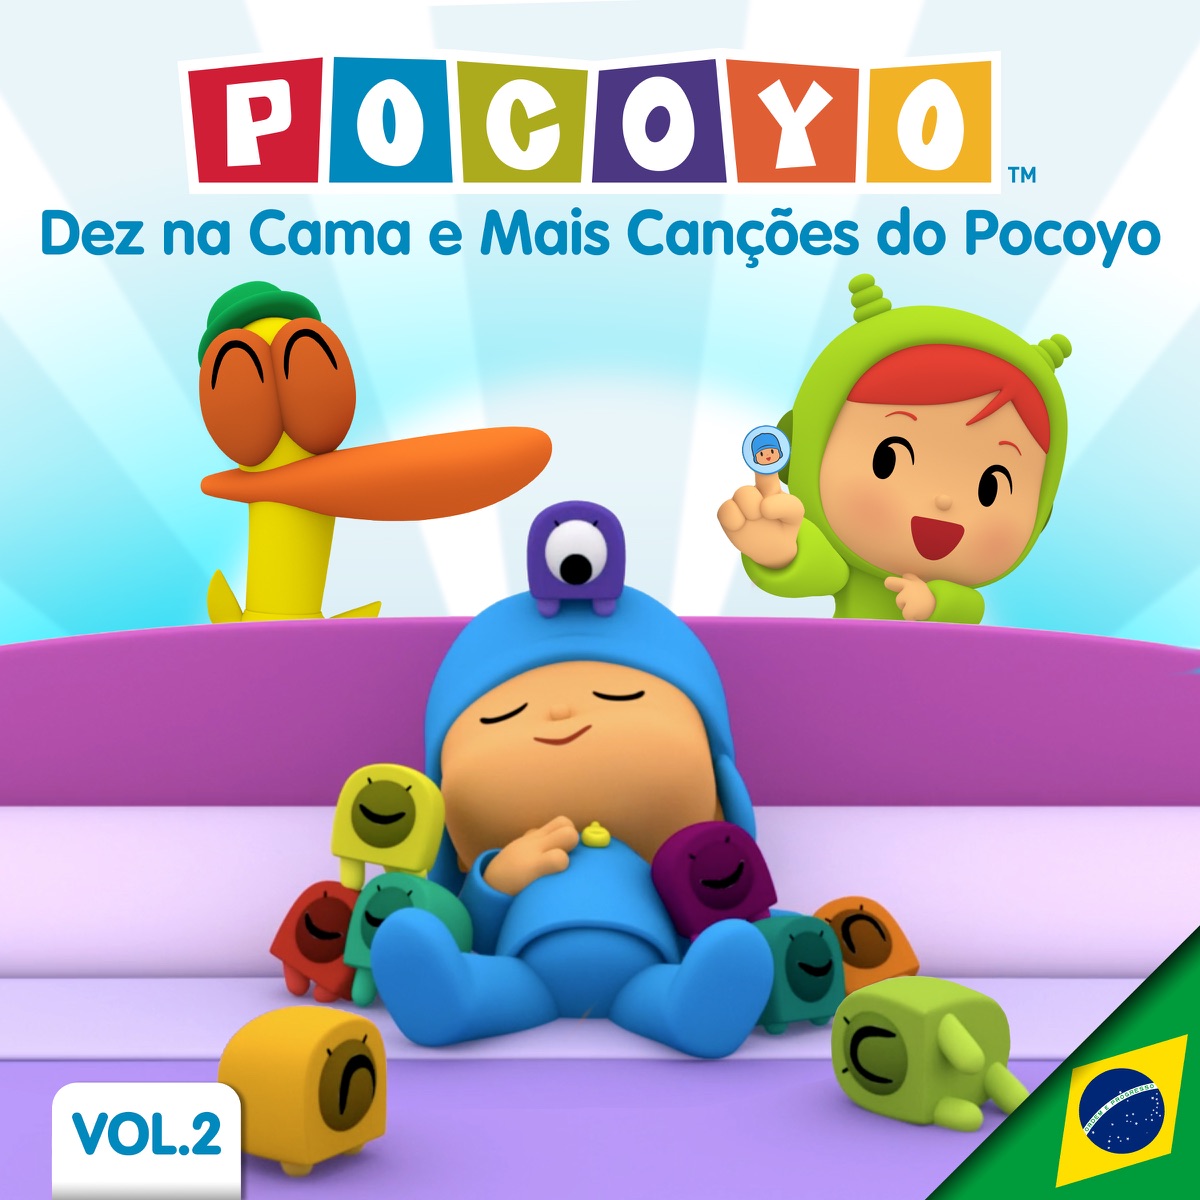 Pocoyo e Pato: Melhores amigos  NOVA TEMPORADA! [30 minutes] 